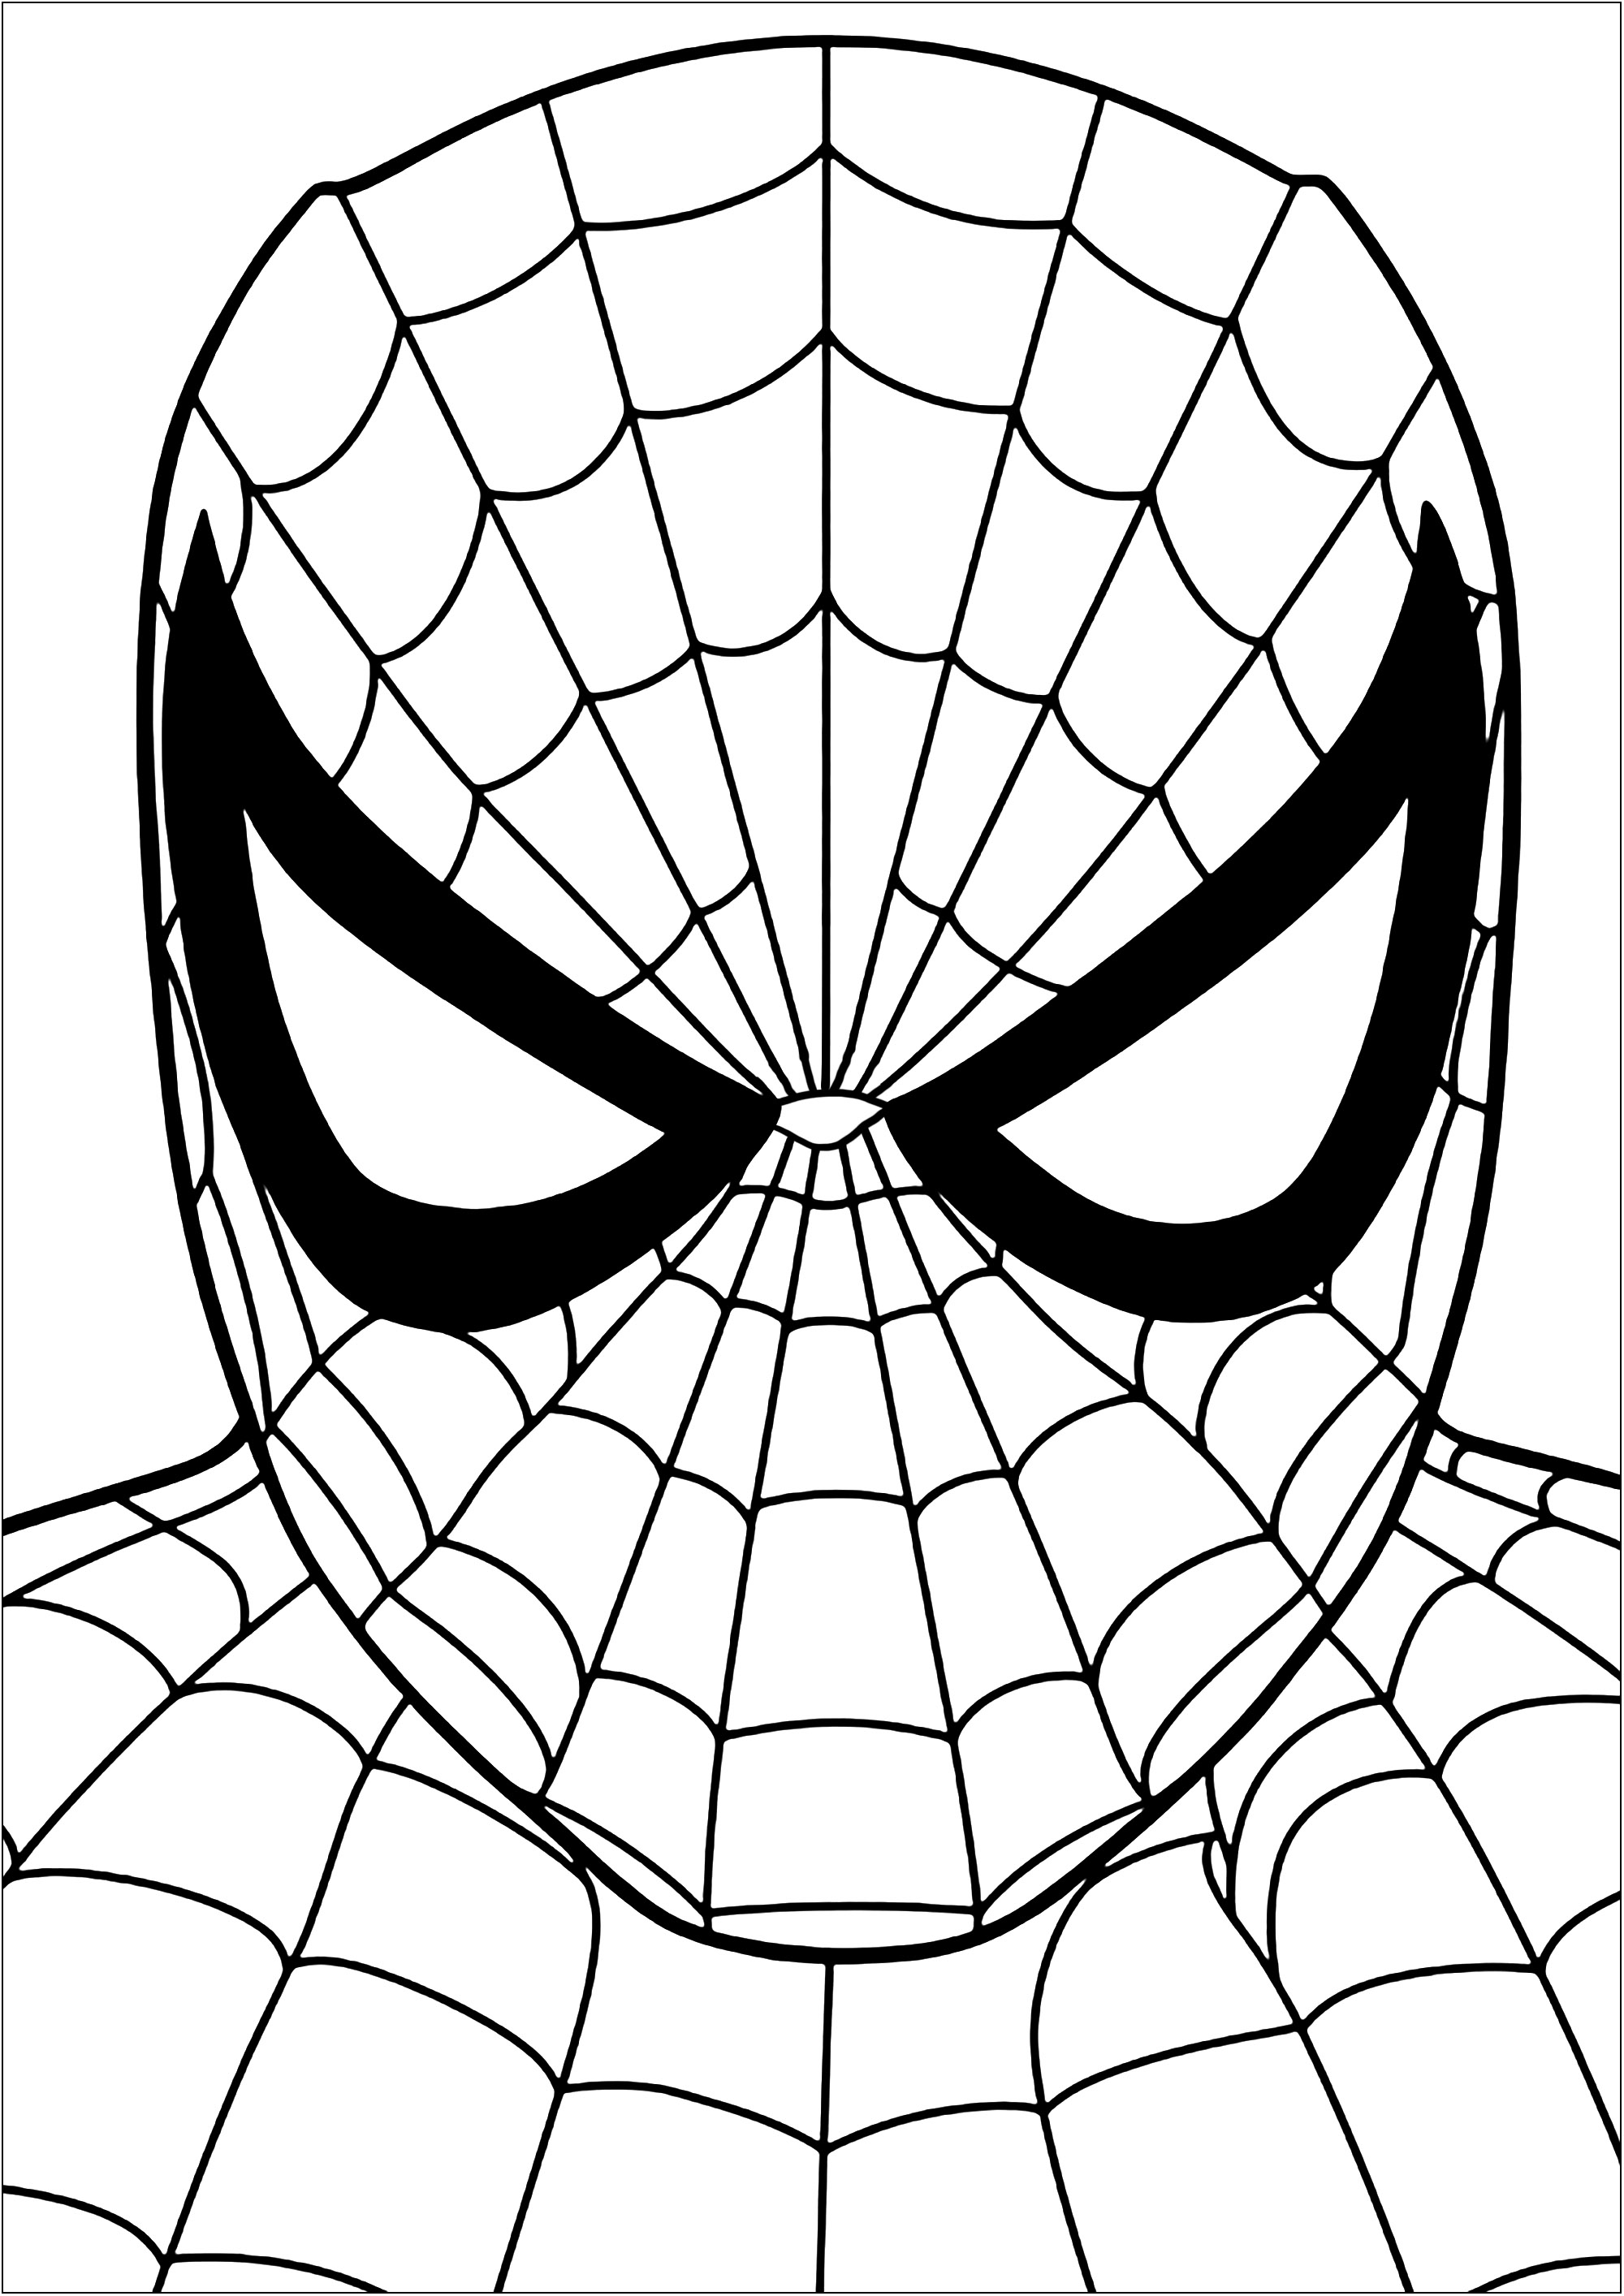 Desenhos do Homem-Aranha para colorir